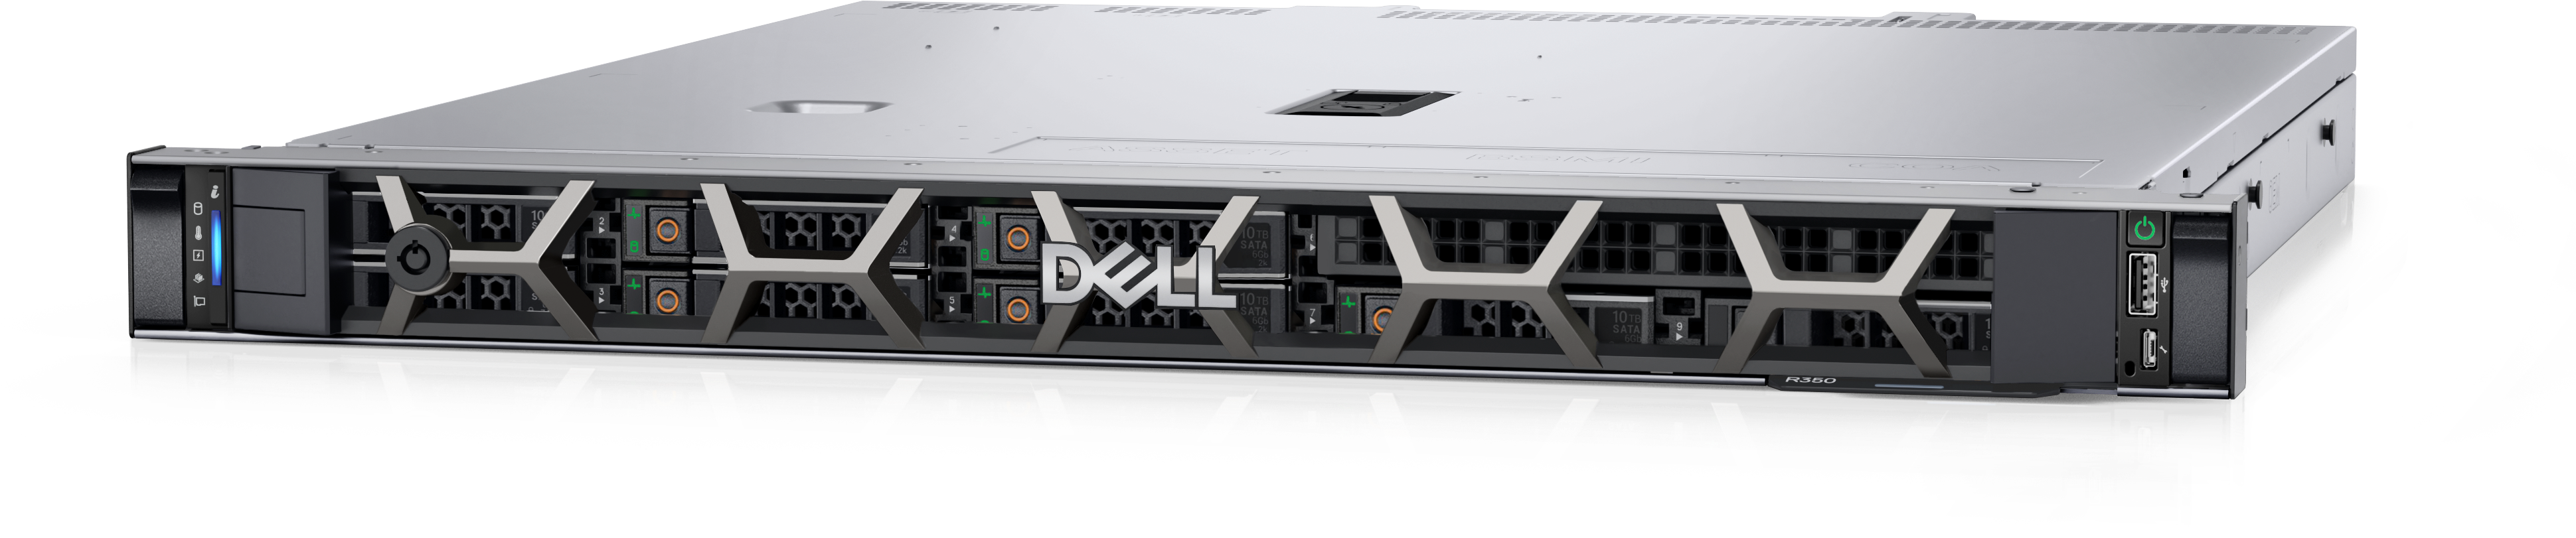 PowerEdge R350ラックサーバー | Dell 日本